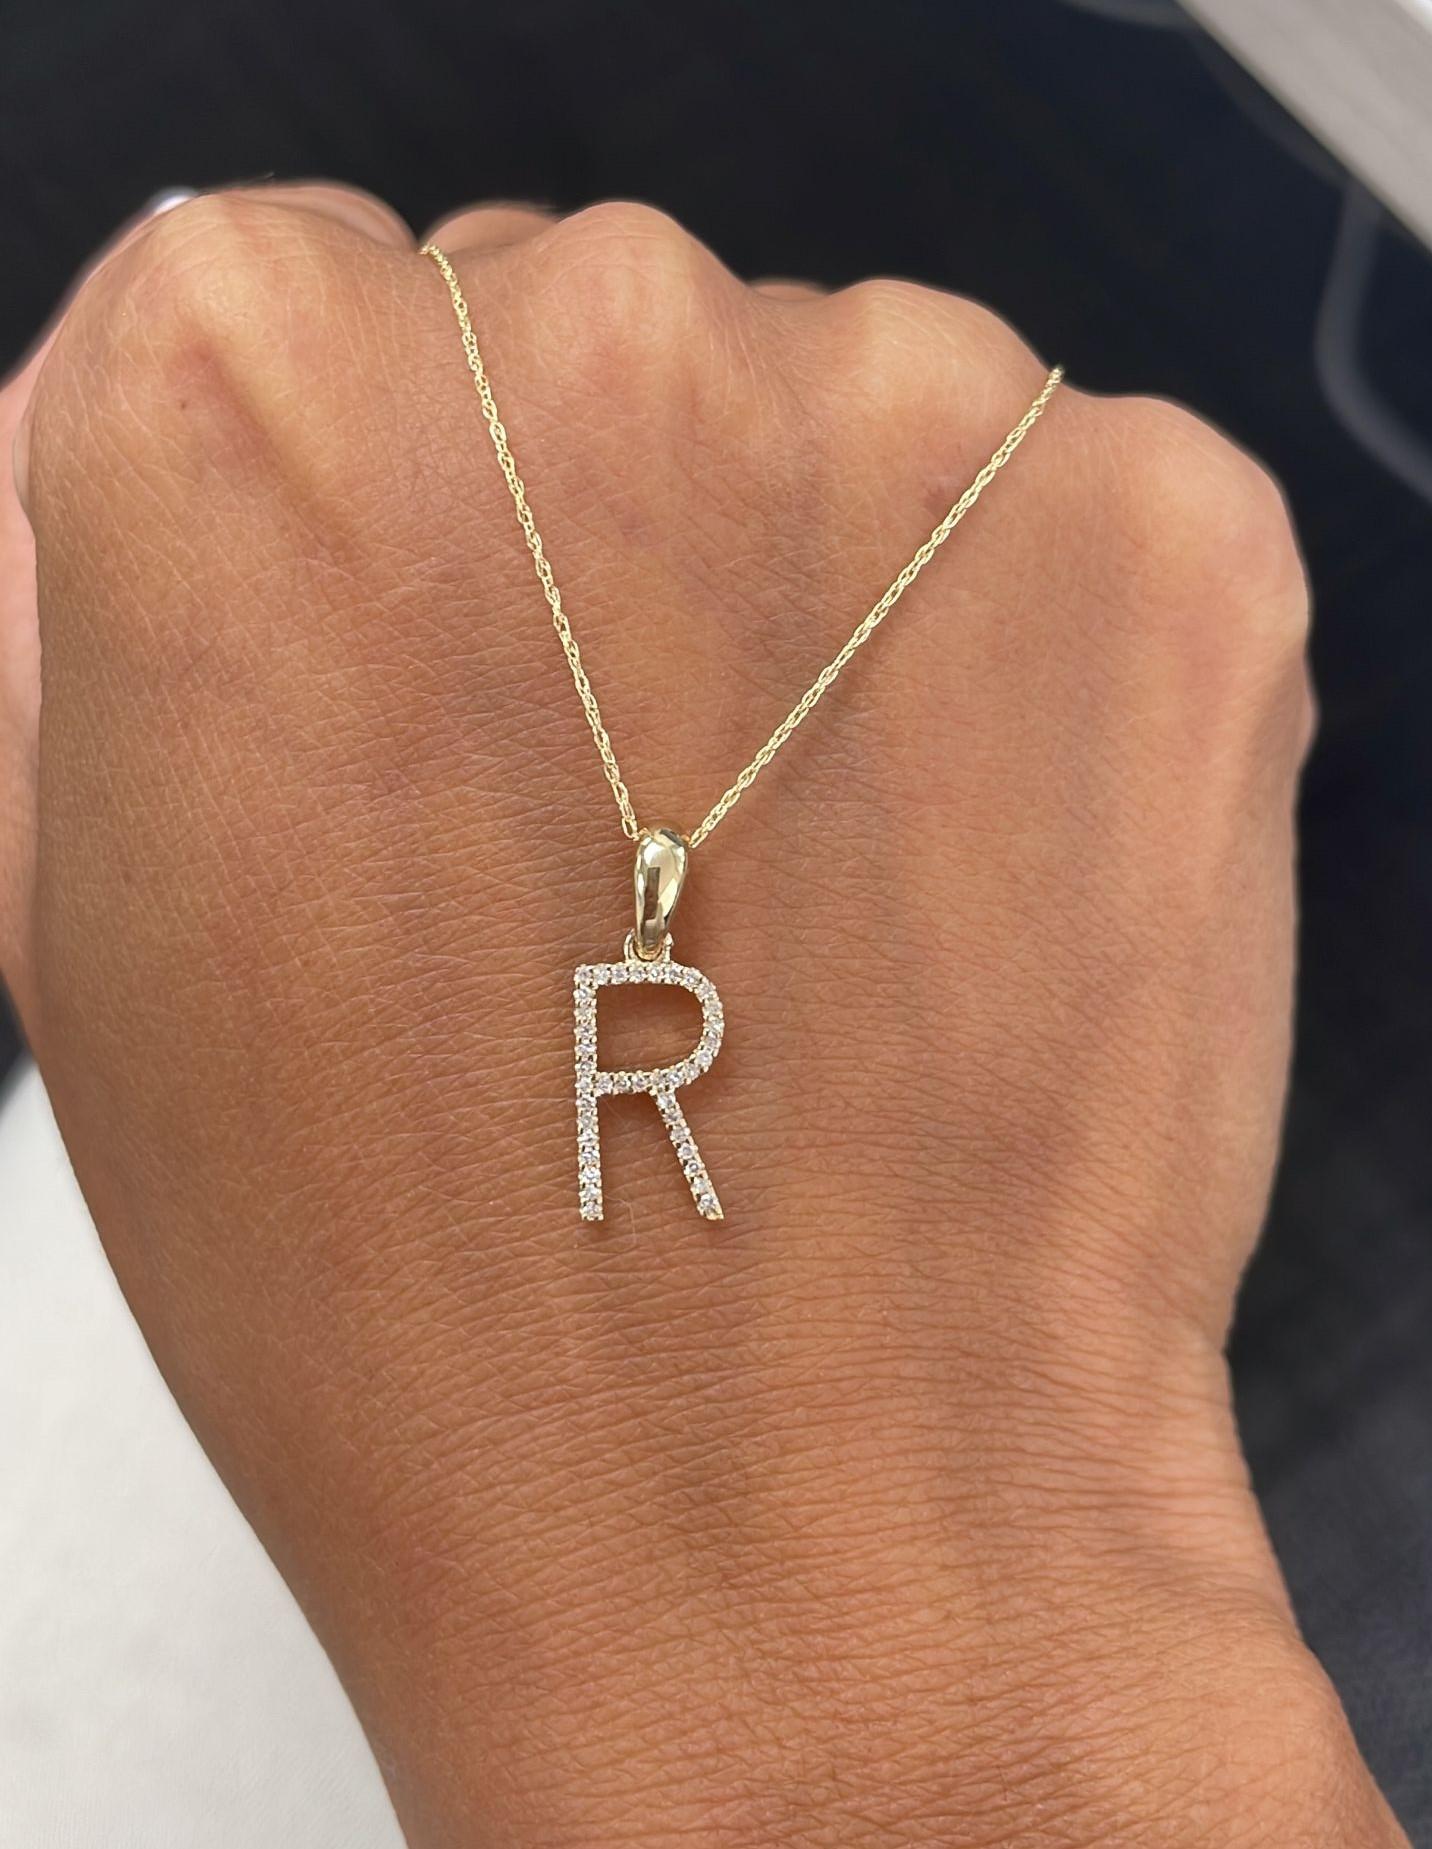 Collier à pendentif avec l'initiale de l'alphabet : Ce magnifique collier en or d'une longueur de chaîne de 16 à 18 pouces, avec une initiale de 13 mm de diamètre et des diamants ronds de 0,09 à 0,12 ct, vous permet d'afficher votre nom, votre